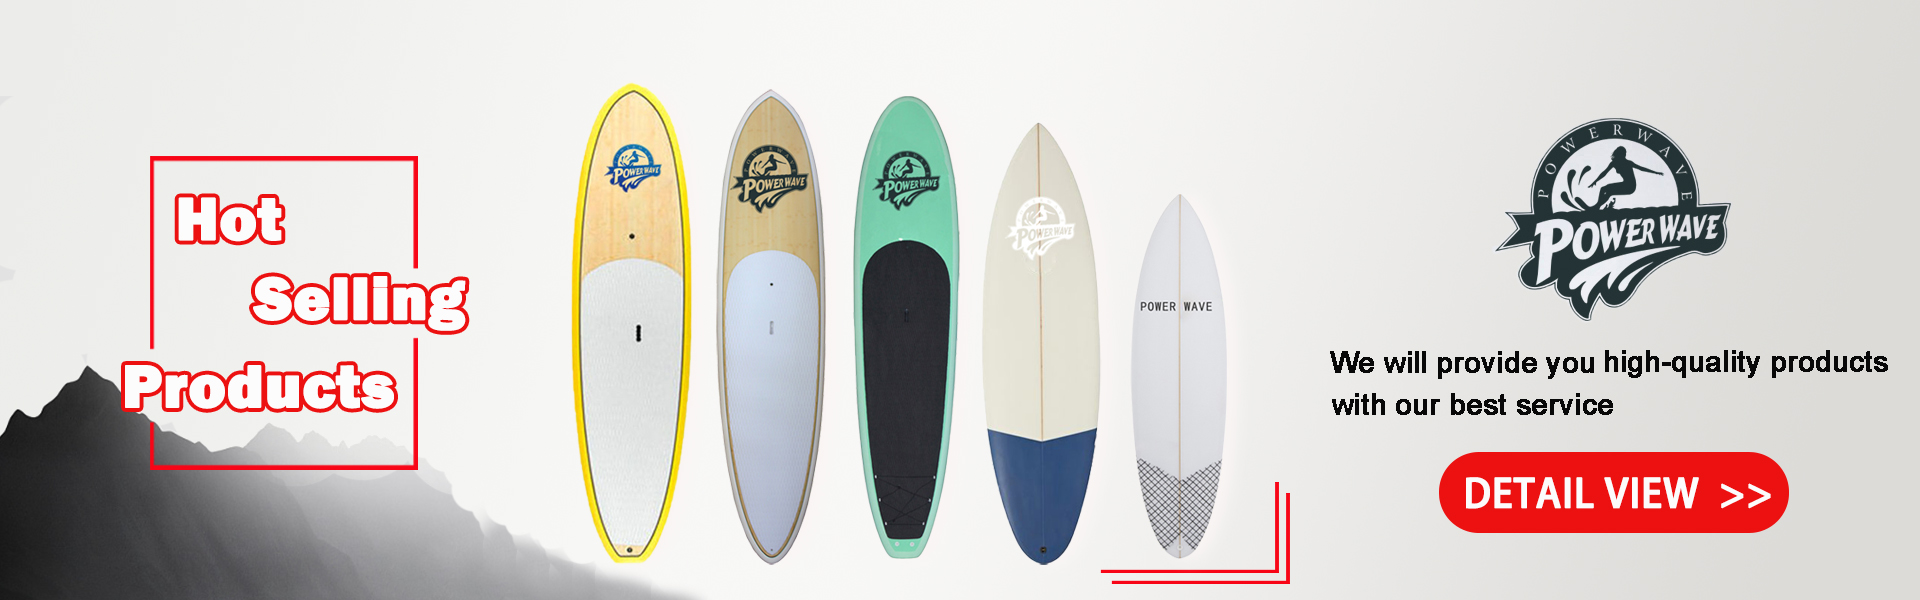 Surfboard, Soft Board, SUP,Power Wave Water Sports co.Ltd